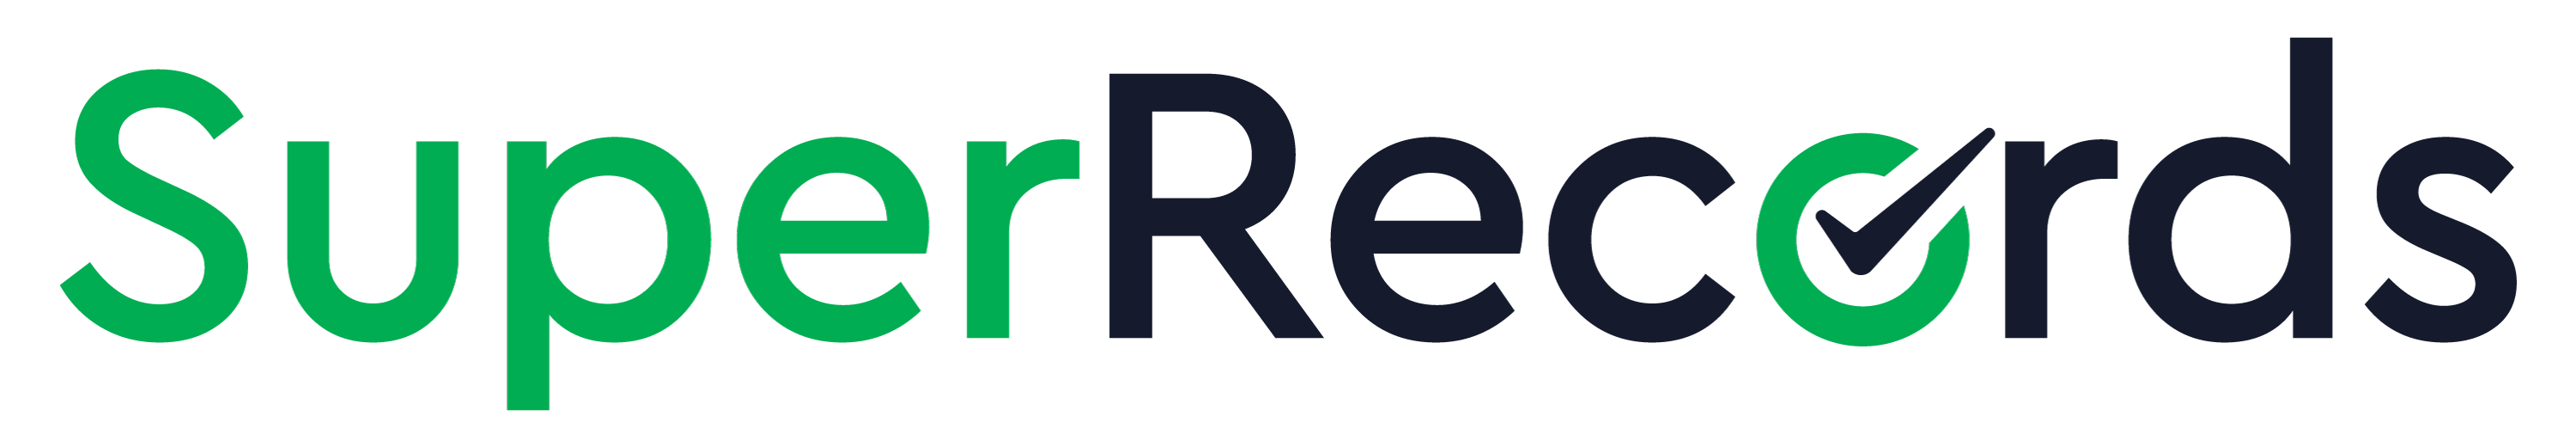 Super Reccords Logo